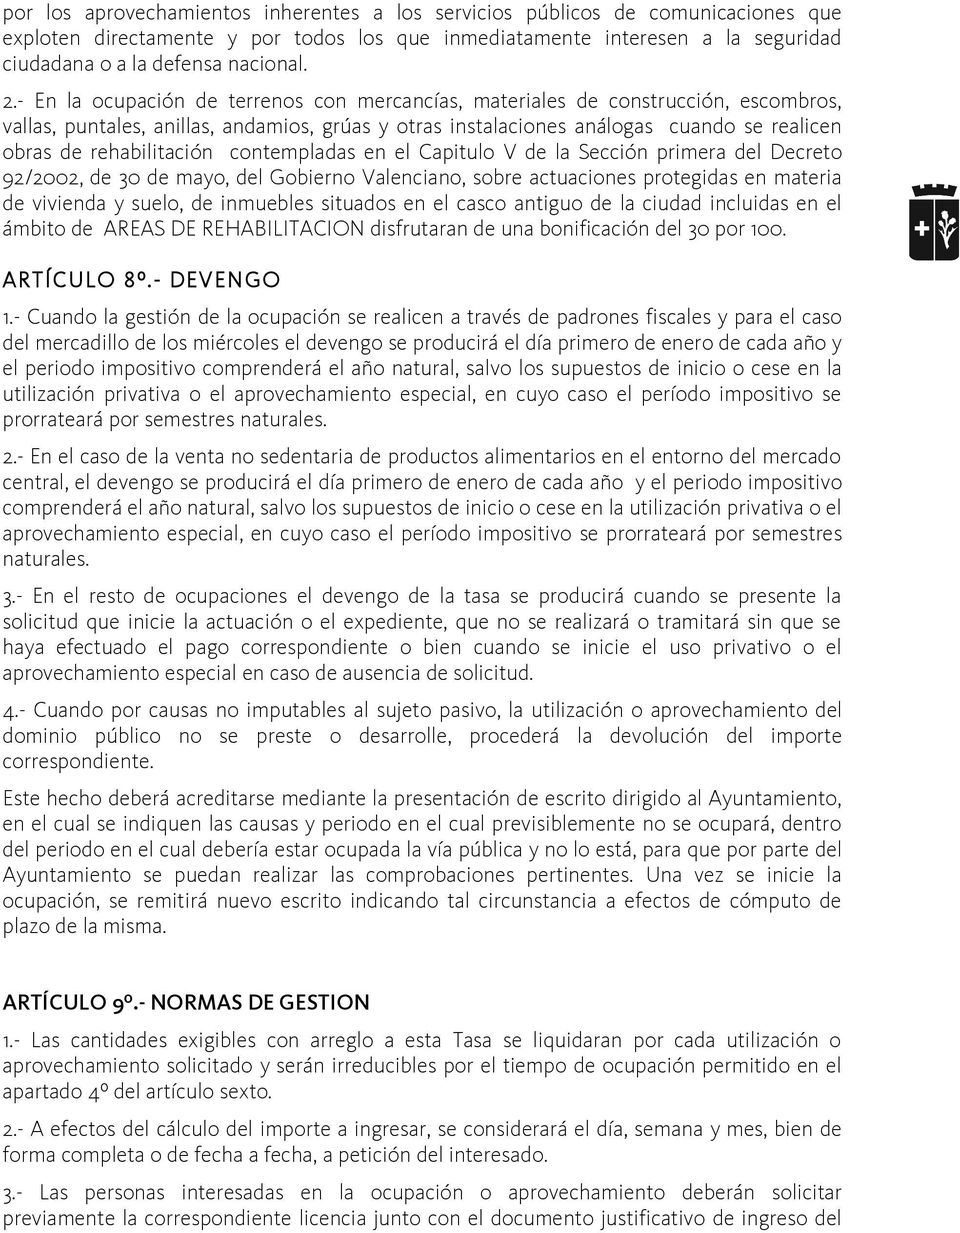 rehabilitación contempladas en el Capitulo V de la Sección primera del Decreto 92/2002, de 30 de mayo, del Gobierno Valenciano, sobre actuaciones protegidas en materia de vivienda y suelo, de